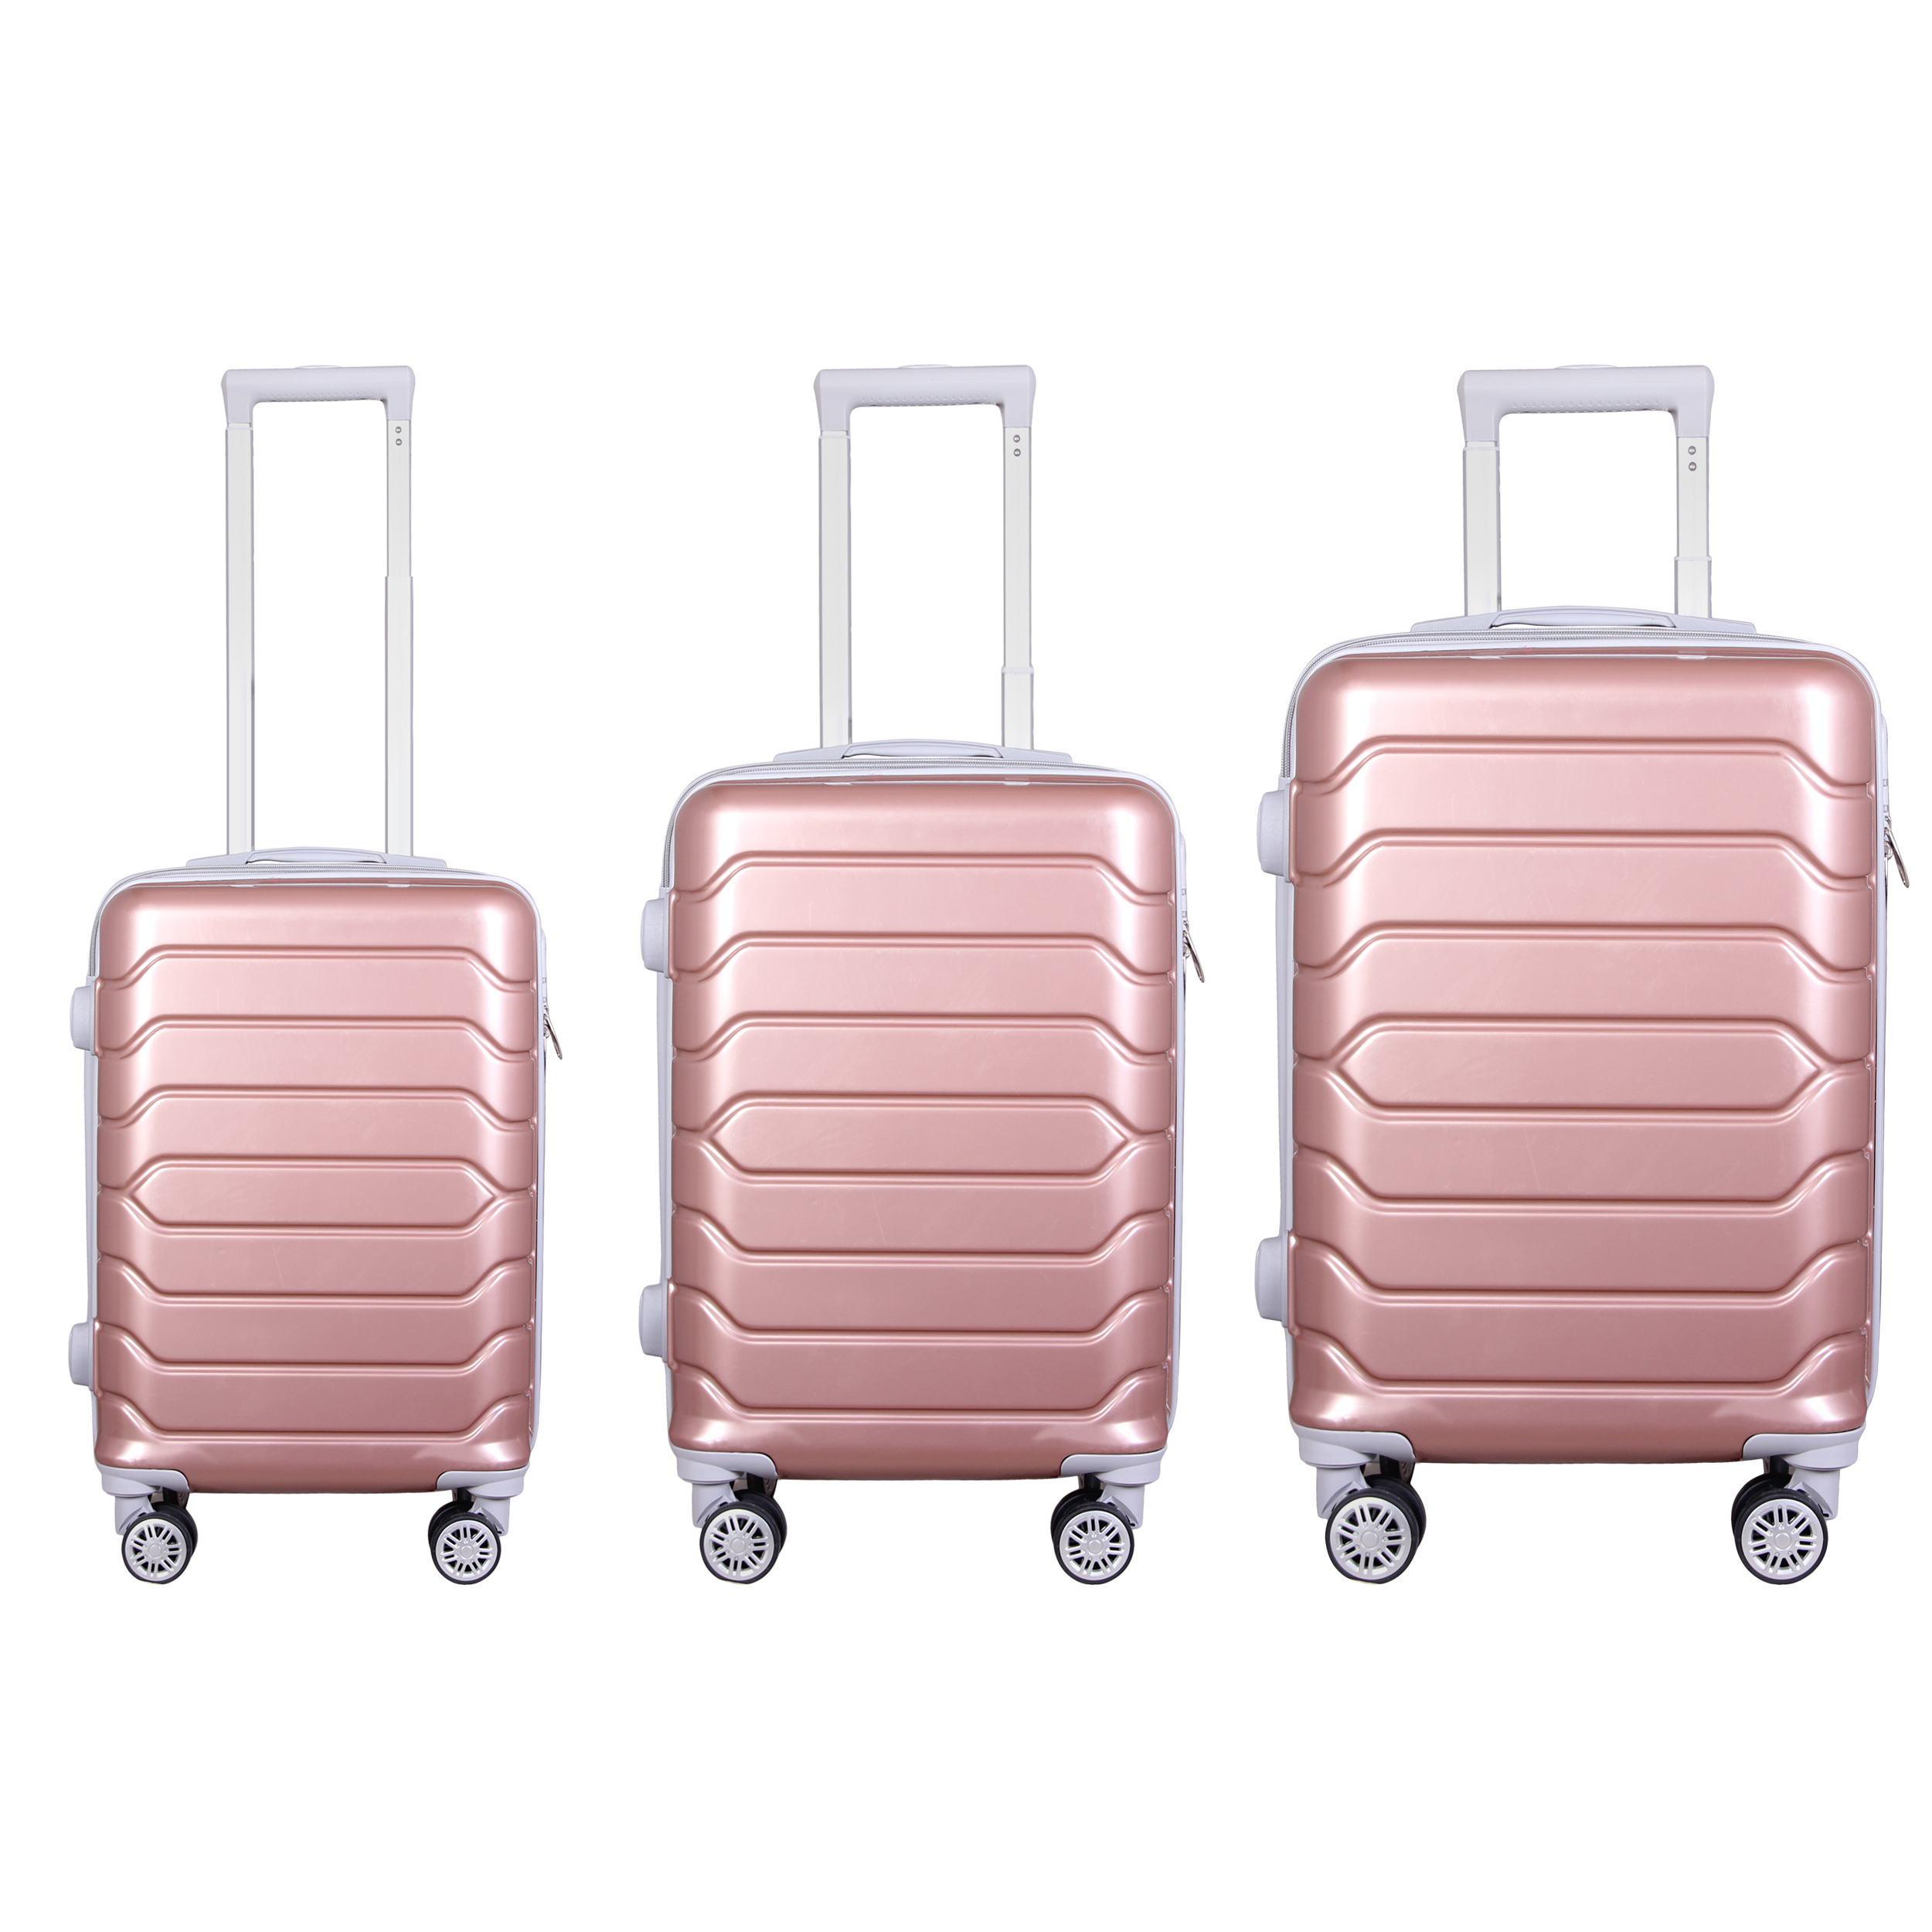 مجموعه سه عددی چمدان مدل 20020